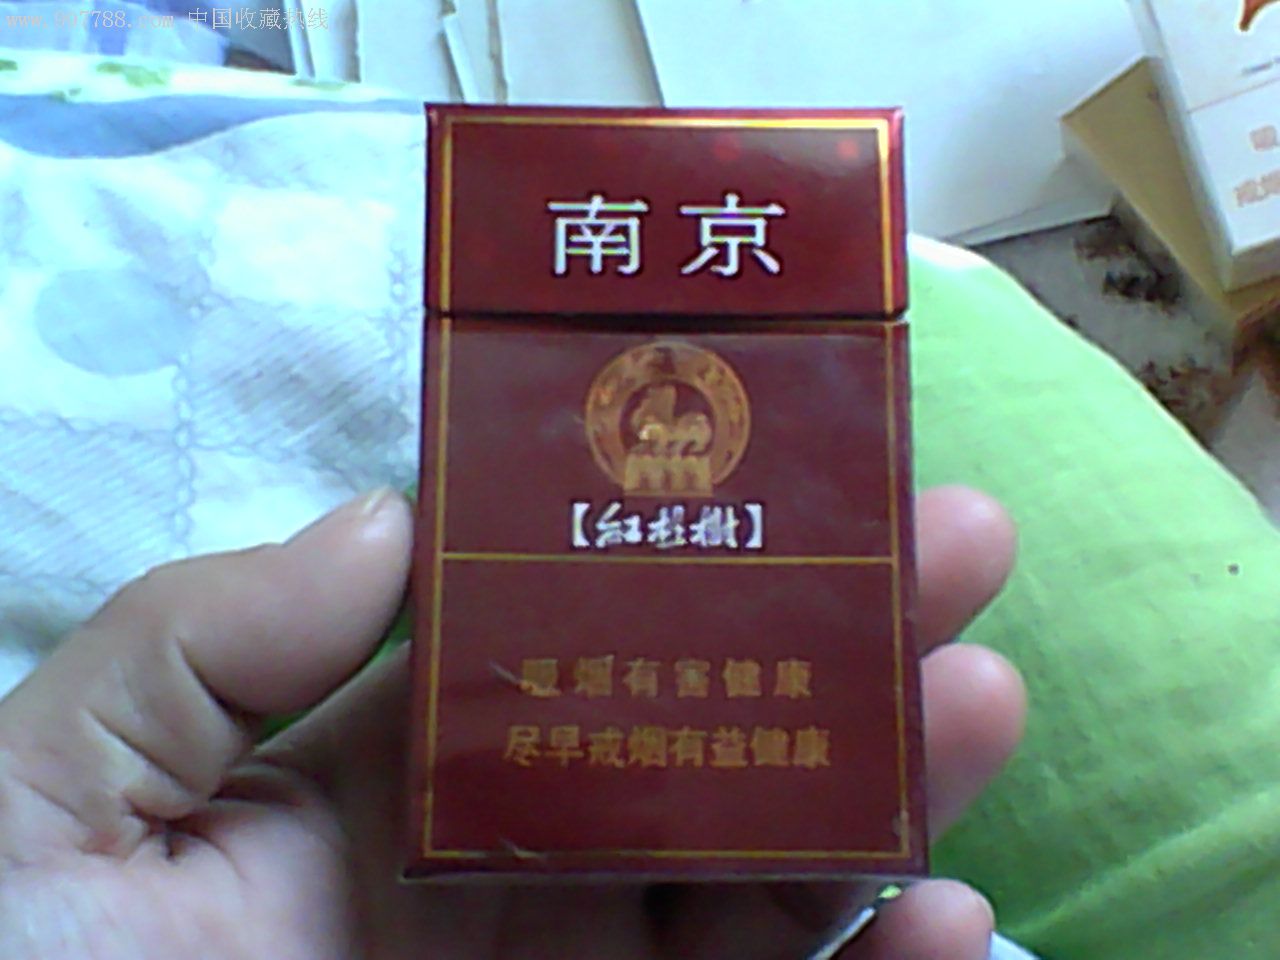 南京红杉树,烟标/烟盒,卡标,条码标,正常流通标,单标,嘴标84s,直式